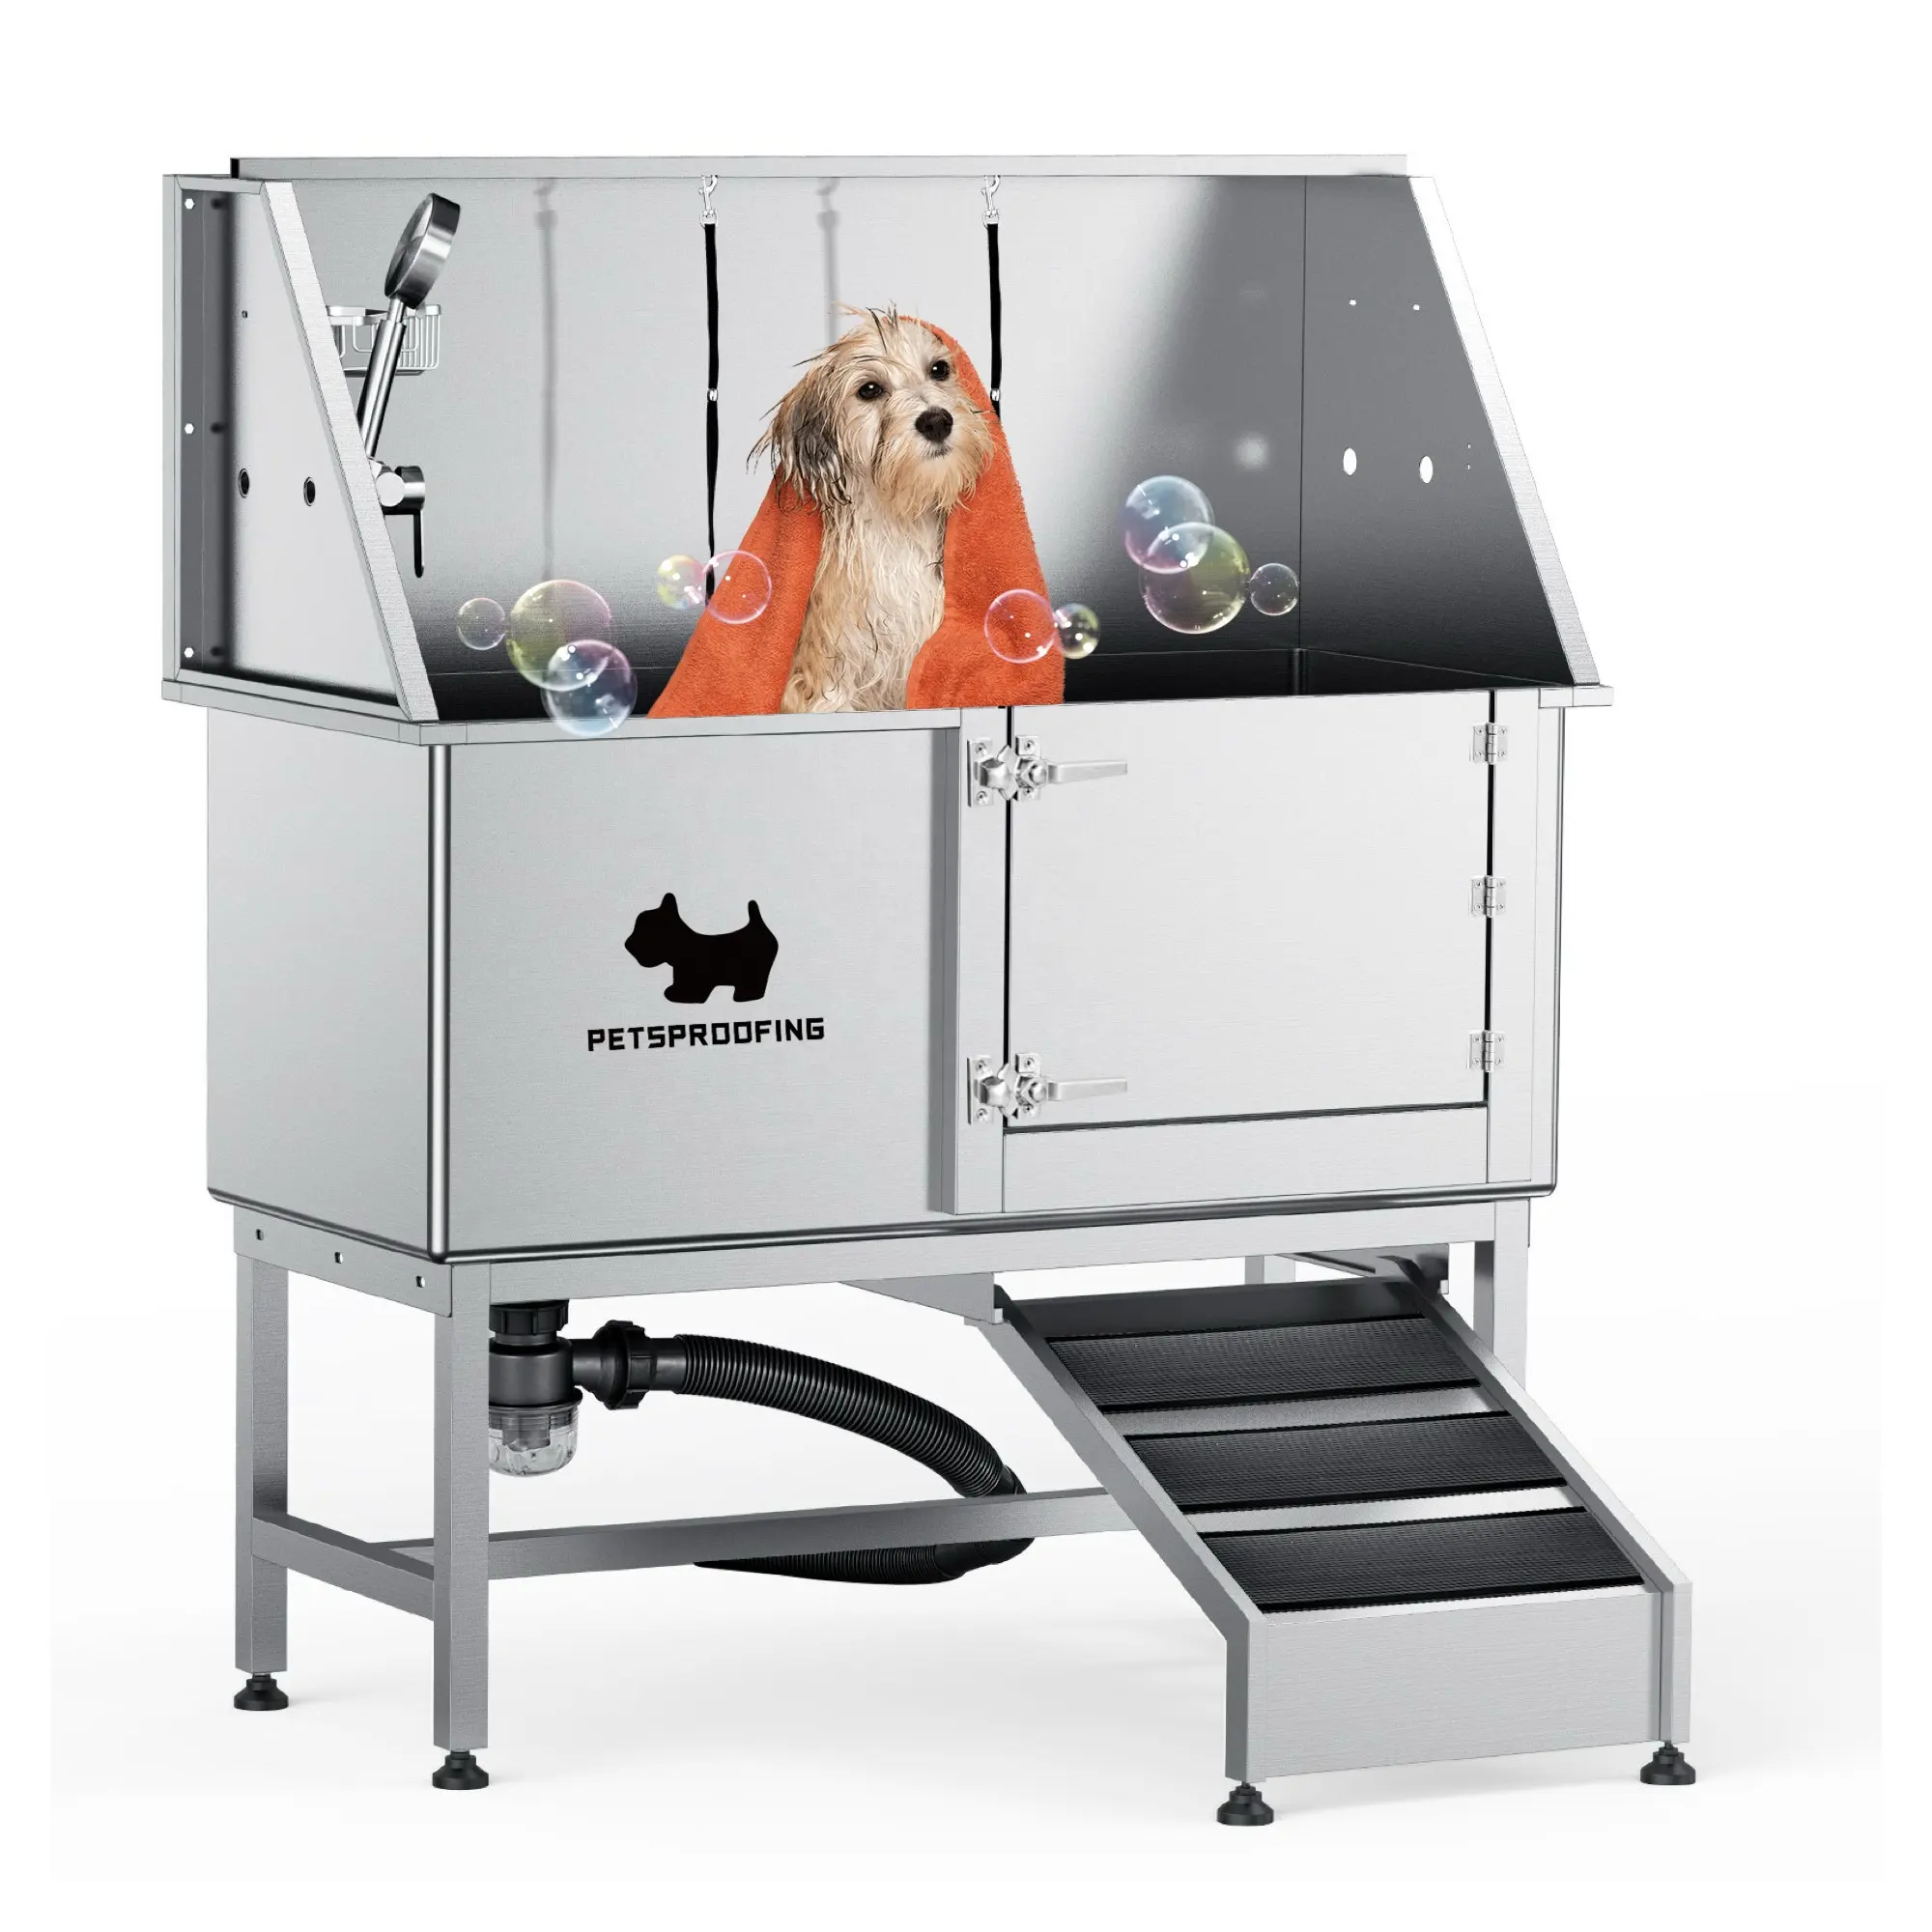 50 "ランプ犬の洗濯シャワーステーションポータブルステンレス鋼ペットグルーミングタブペットスパバスタブ大型犬用浴槽